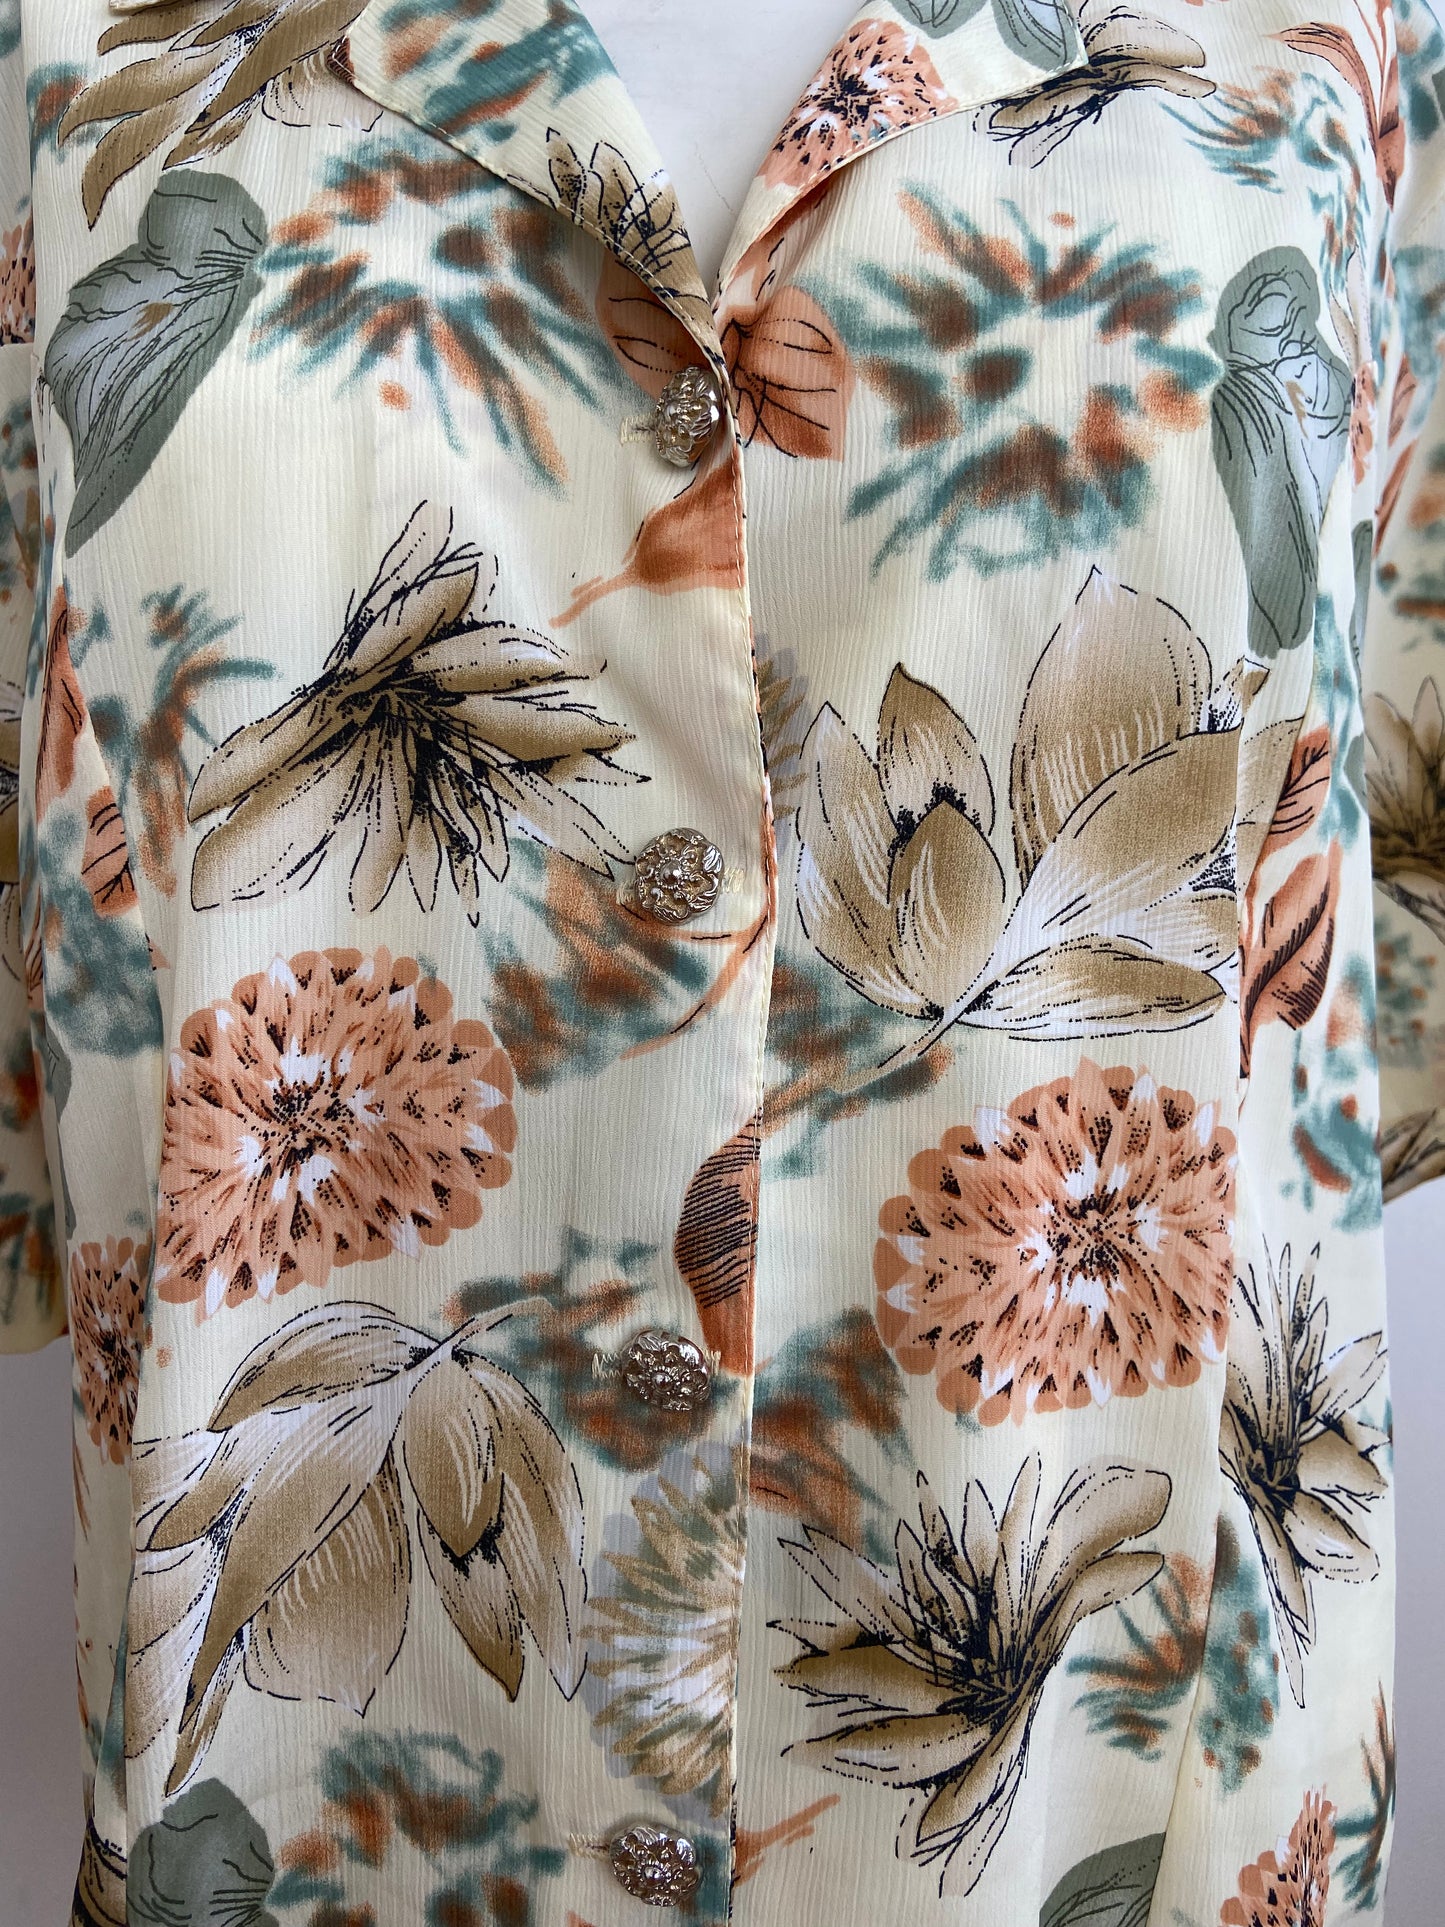 Dried flower shirt